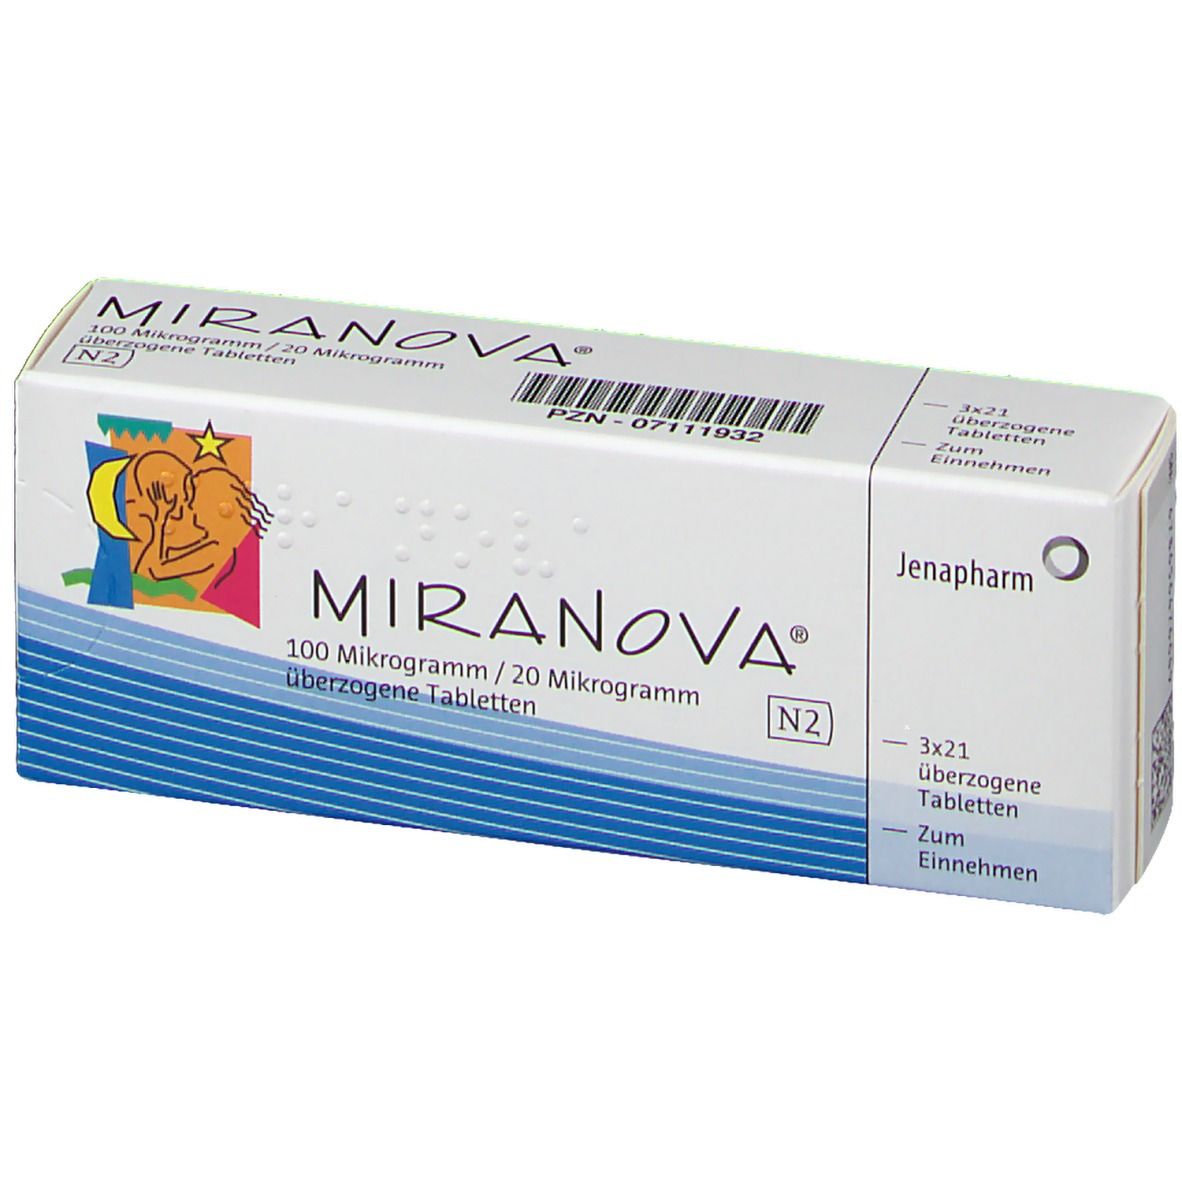 MIRANOVA® 100 µg/20 µg